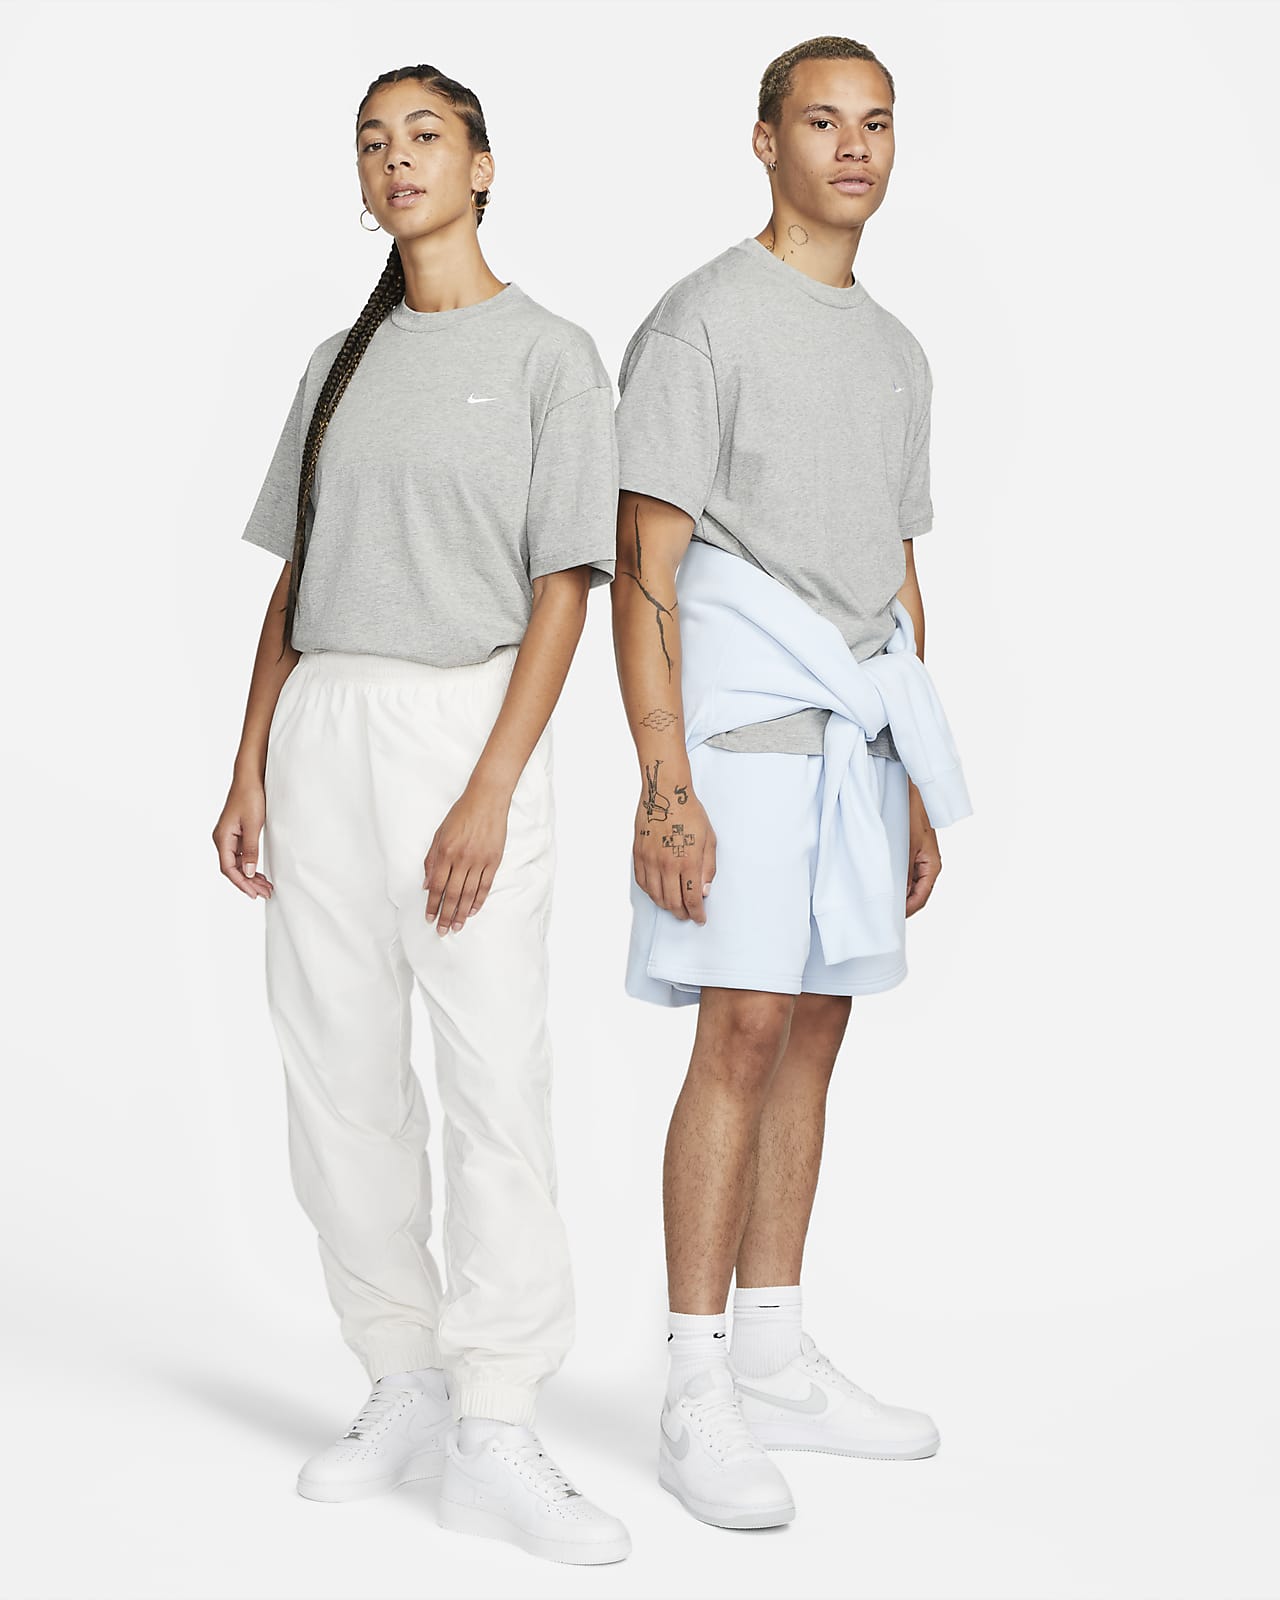 T-shirt Nike femme courte blanc Swoosh petit